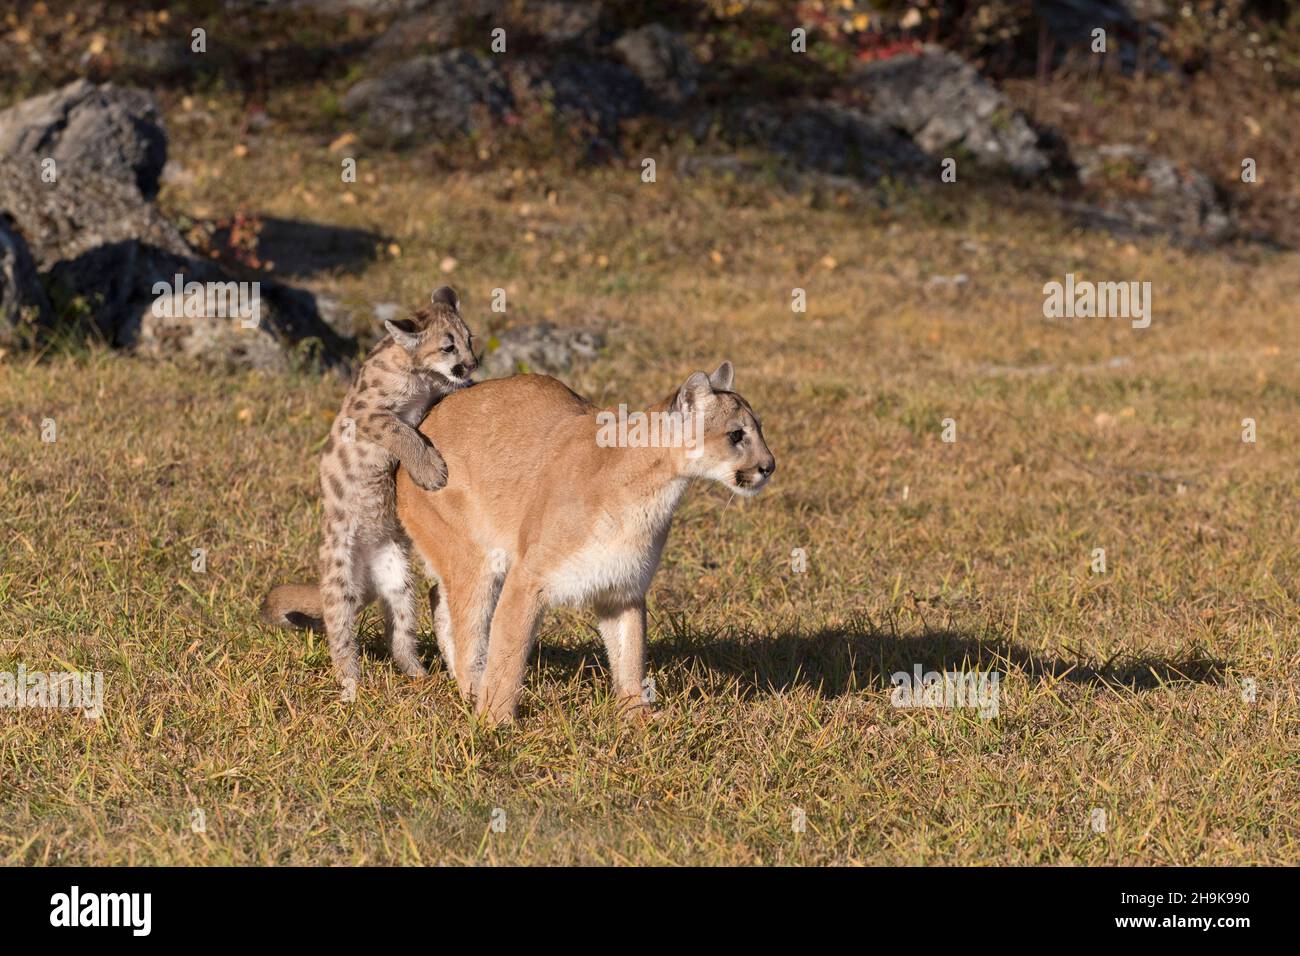 Puma (Felis concolor), jumper sur une femelle adulte, Montana, États-Unis, octobre, conditions contrôlées Banque D'Images